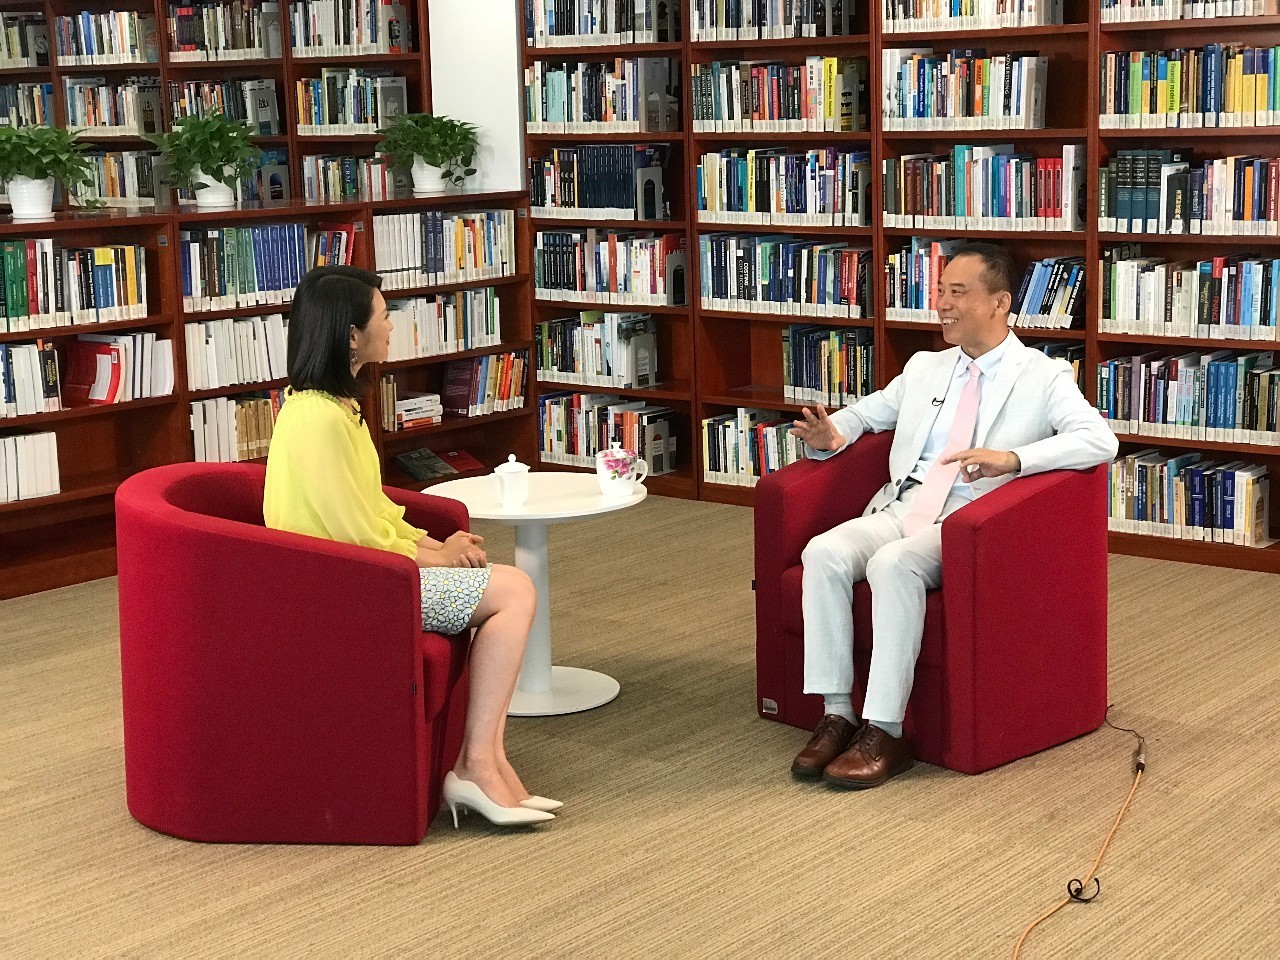 凤凰卫视今日高端访谈节目领航者带您走进徐扬生ai时代教育改革迫在眉